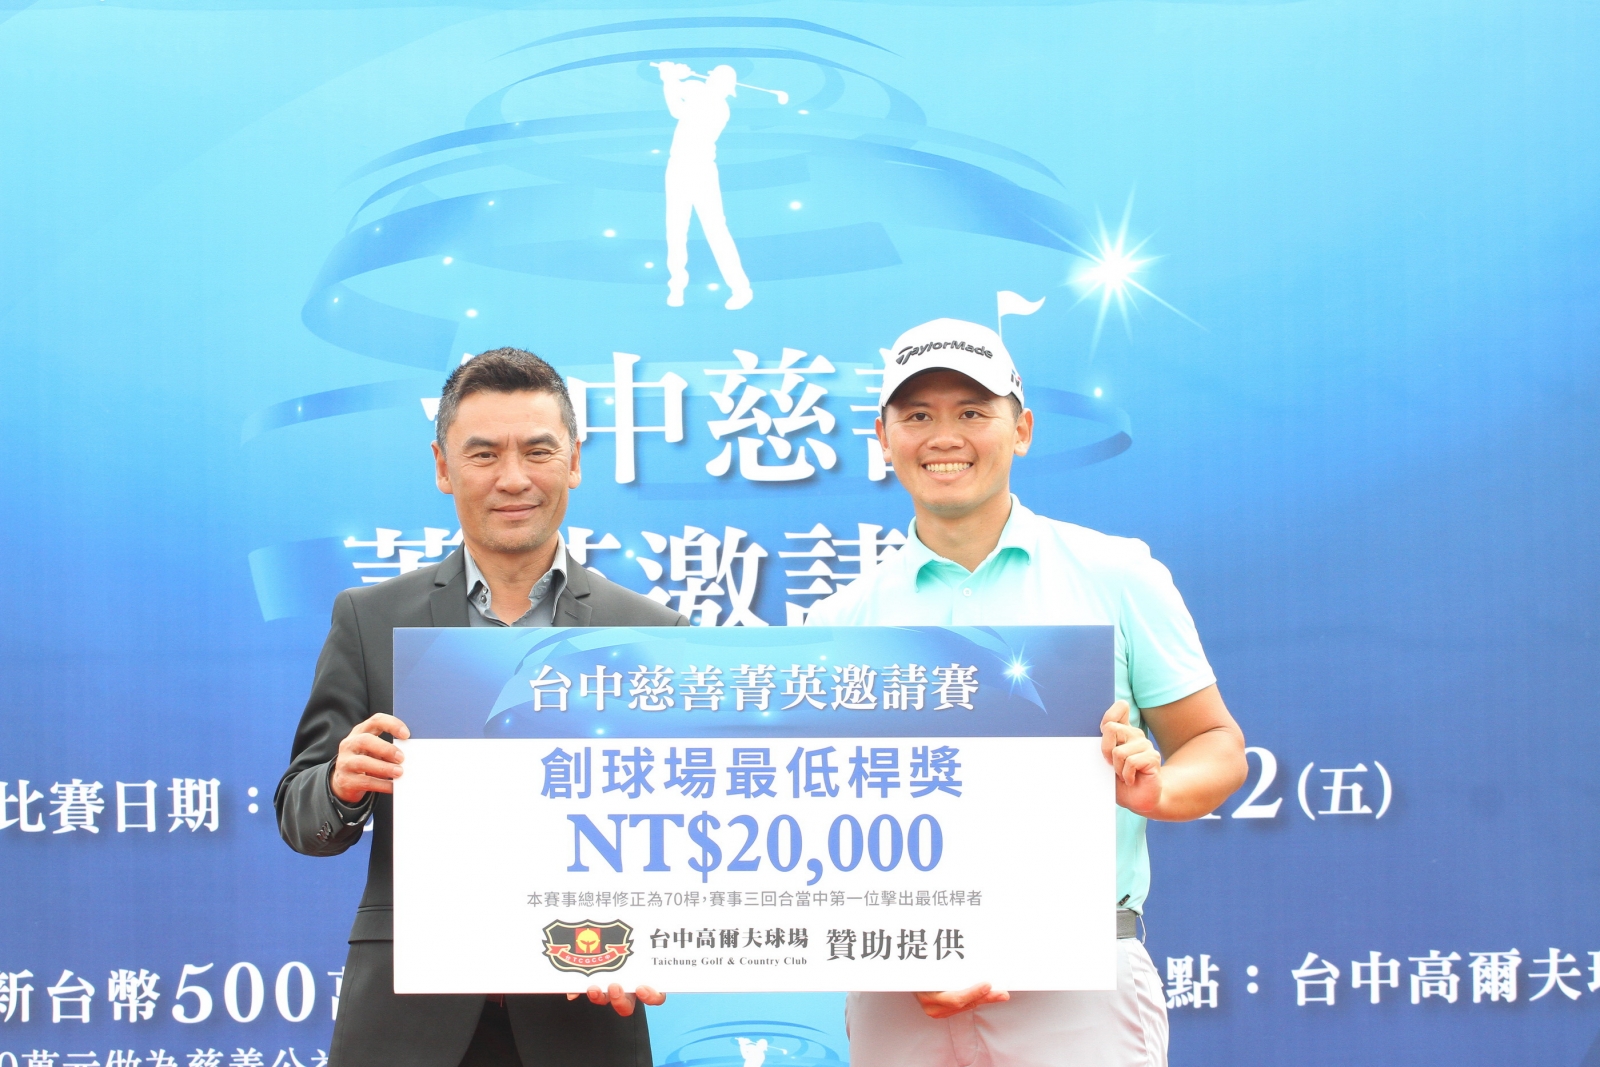 台中高爾夫球場總經理楊文遠頒創球場最低桿紀錄(63桿)奬金二萬元給林冠伯